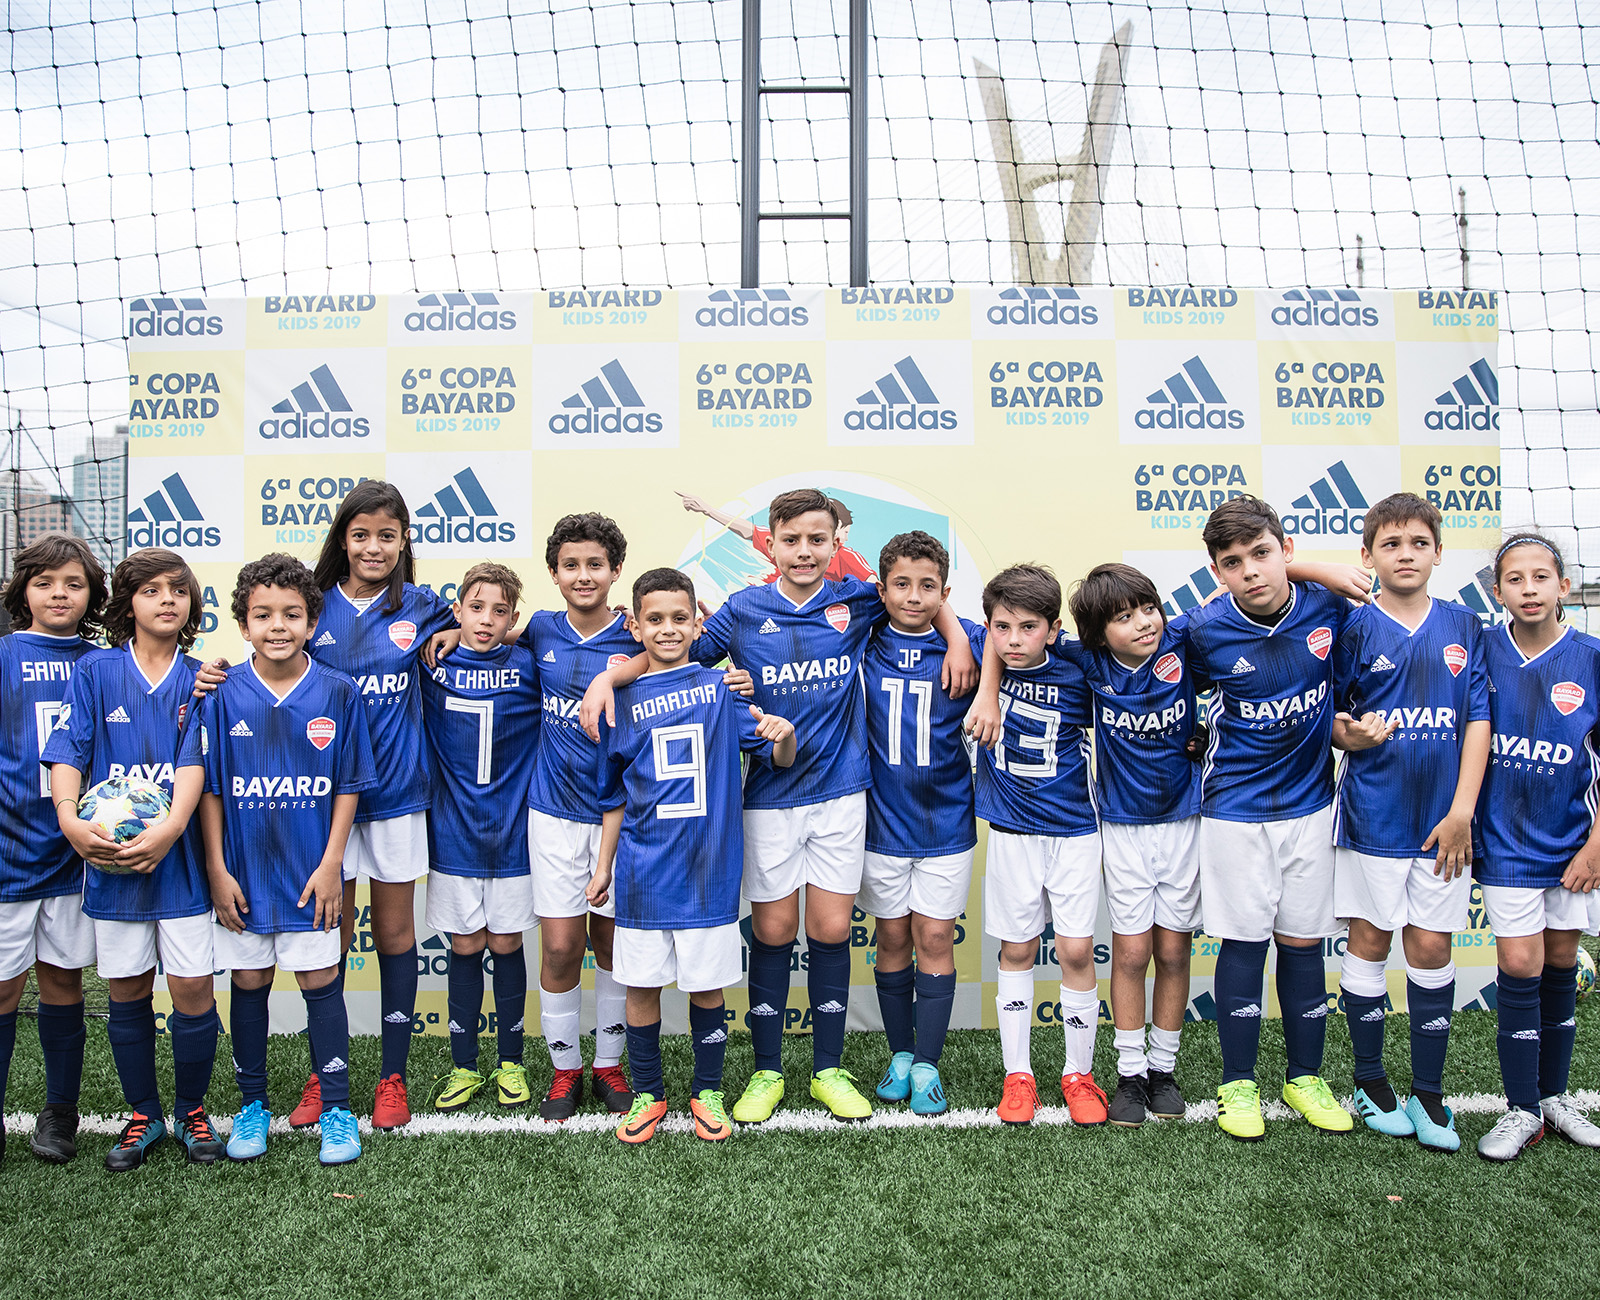 Imagem do local da realização da 6ª Copa Bayard Kids - Adidas.